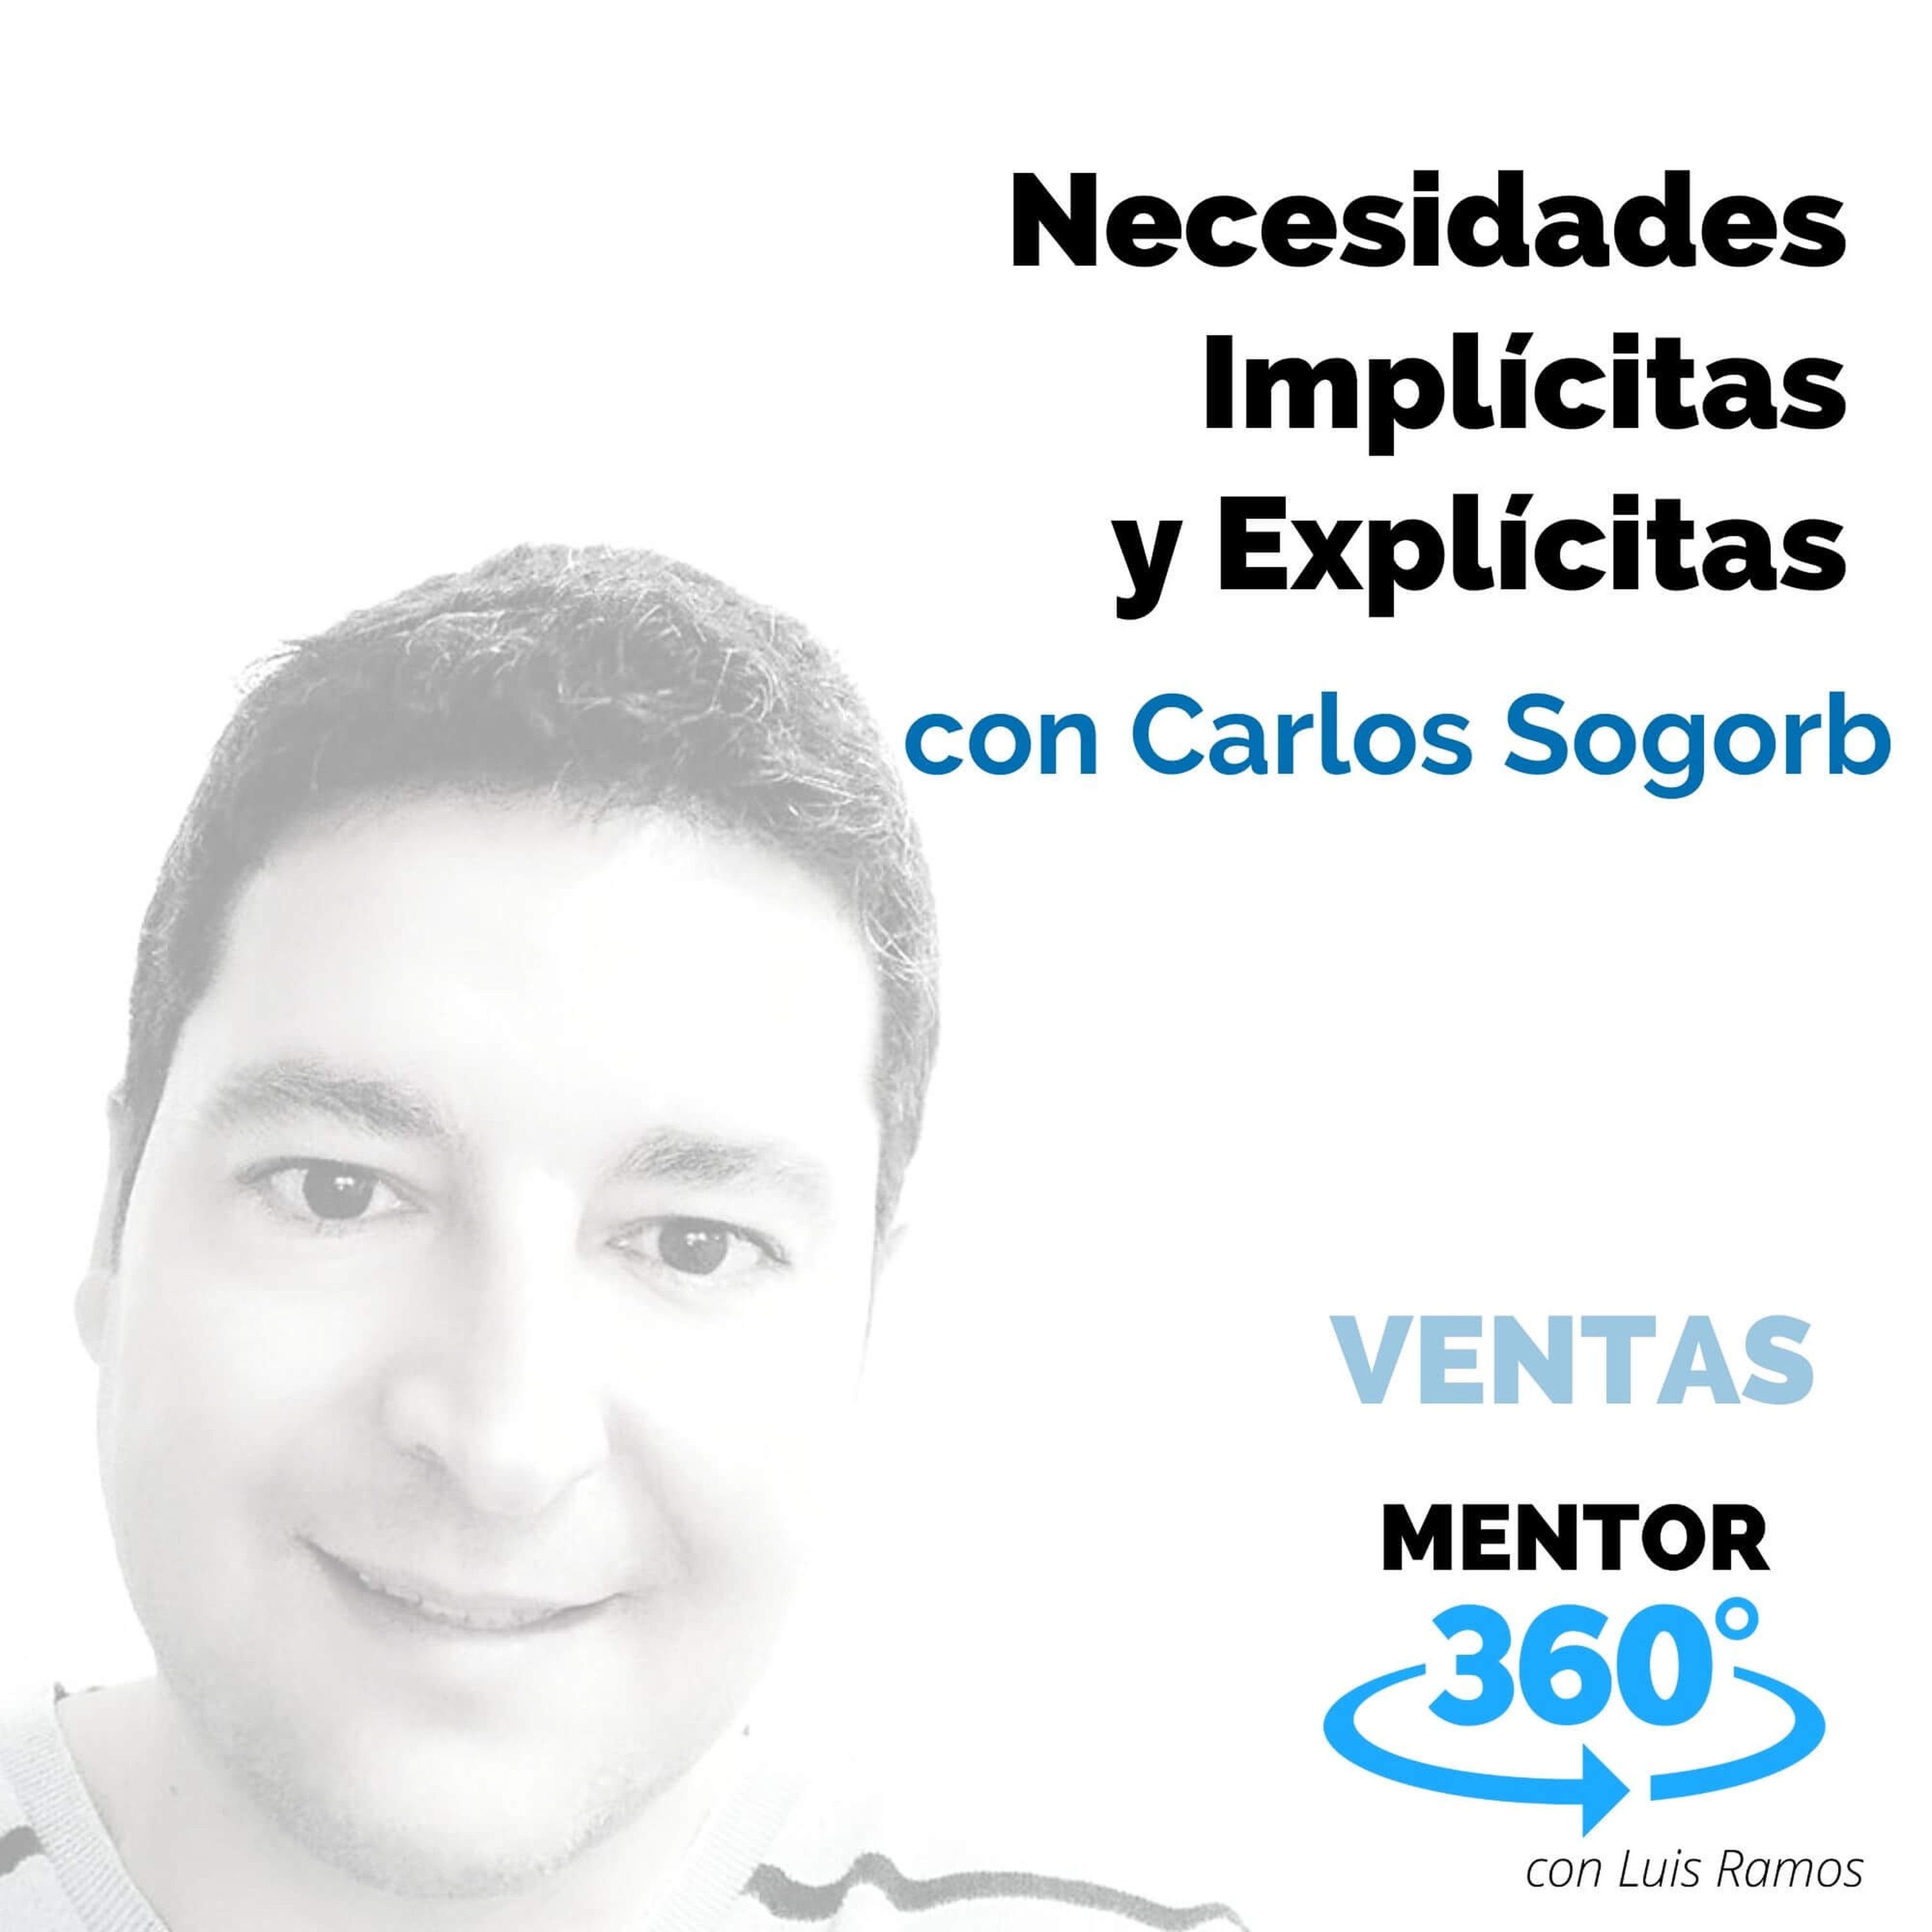 Necesidades Implícitas y Explícitas, con Carlos Sogorb - VENTAS - MENTOR360